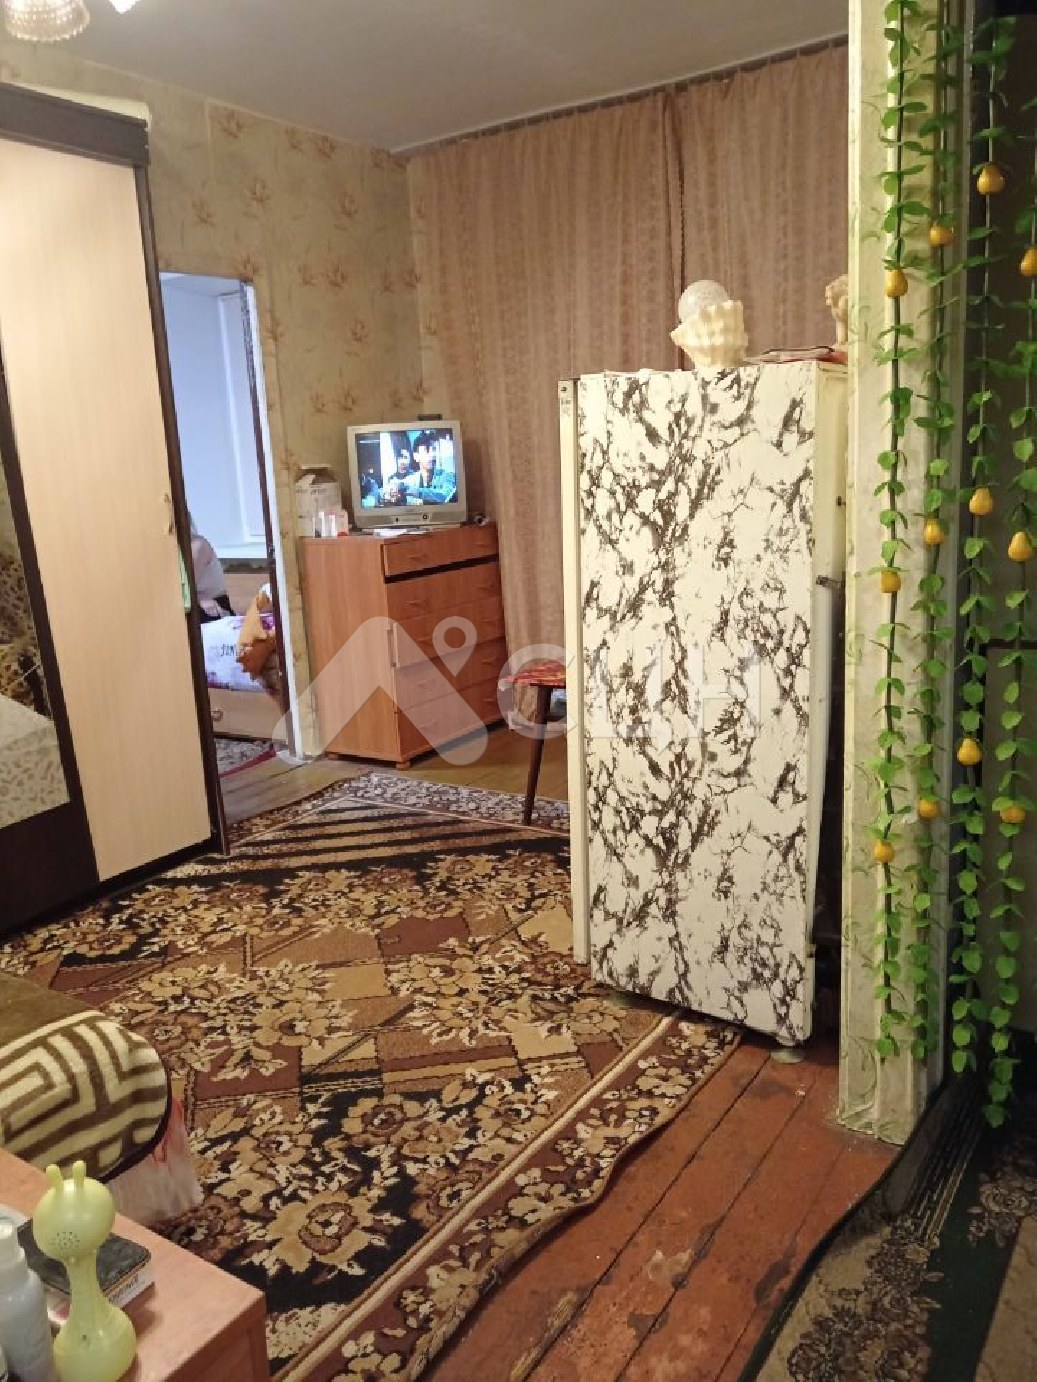 обЪявления саров квартиры
: Г. Саров, улица Александровича, 39, 2-комн квартира, этаж 1 из 4, продажа.